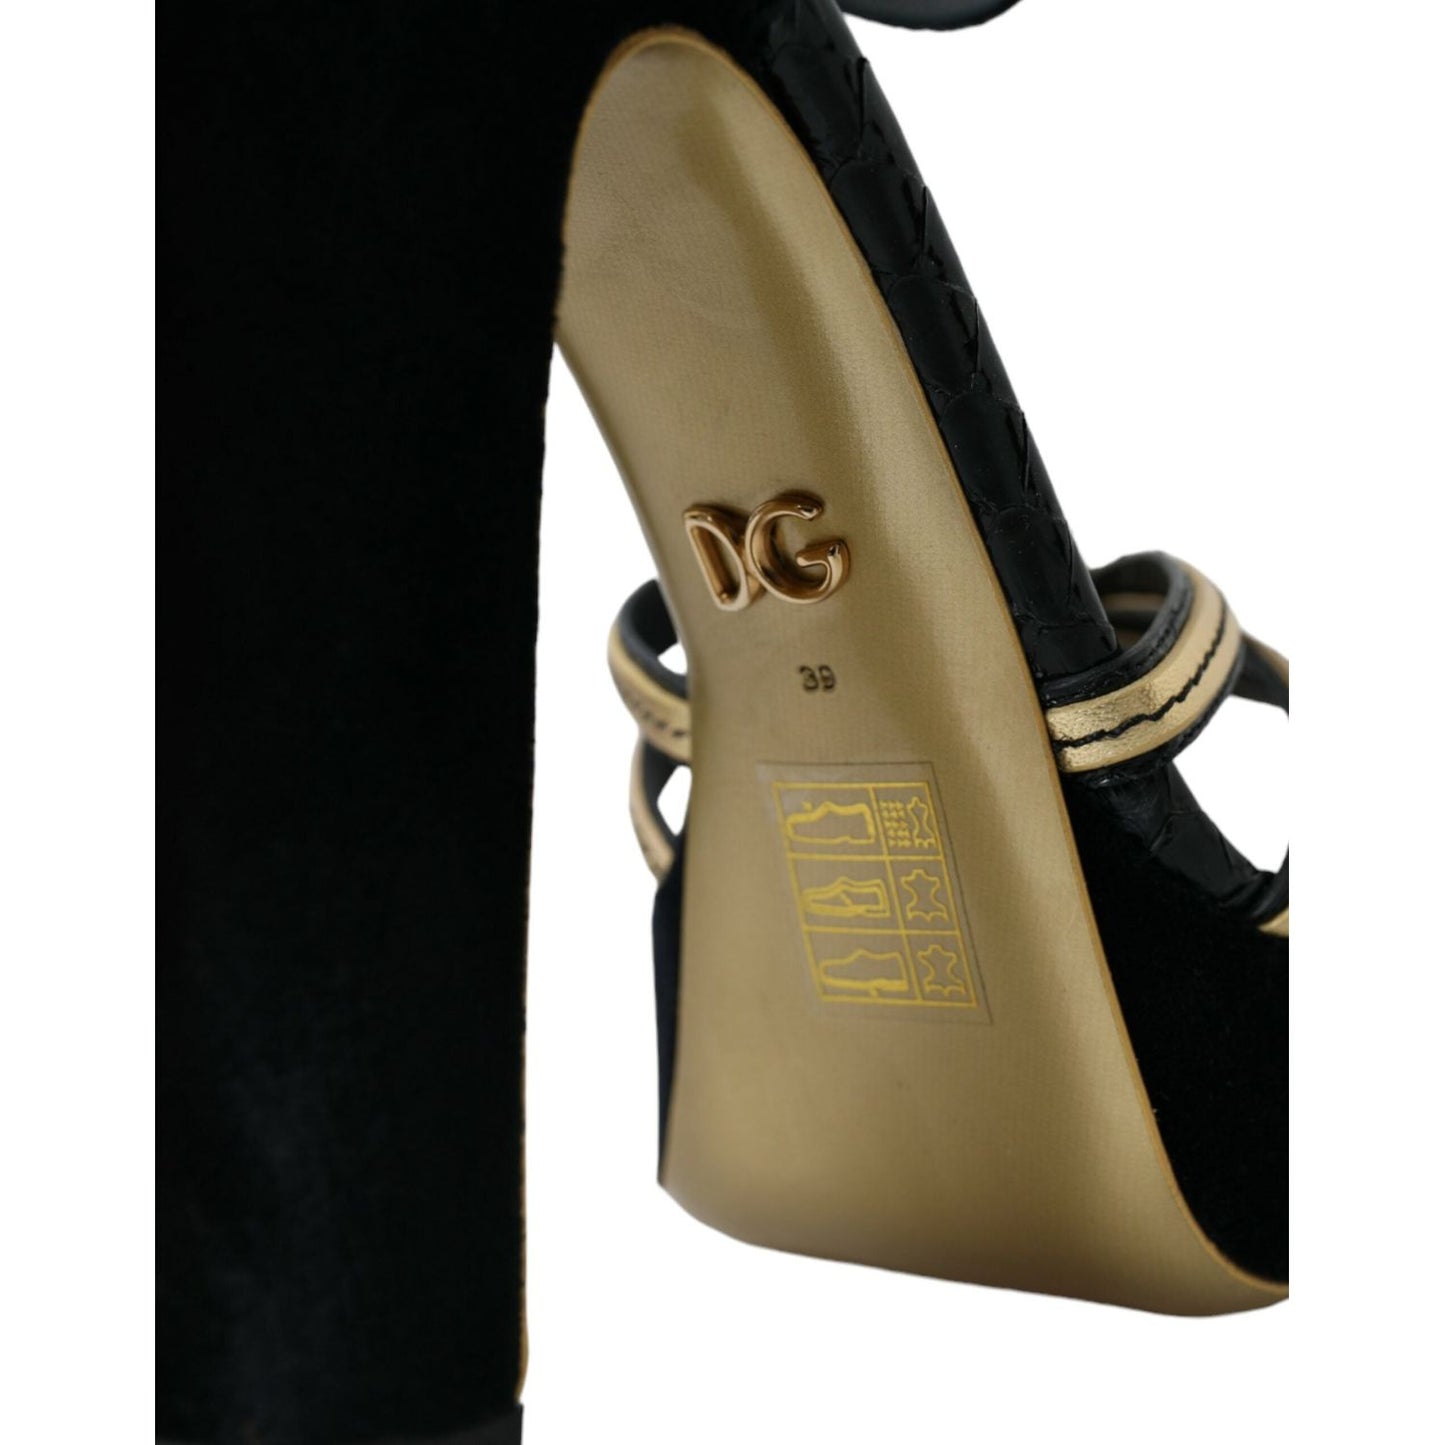 Dolce & Gabbana Black Gold Embellished Heels Sandals Shoes black-gold-embellished-heels-sandals-shoes